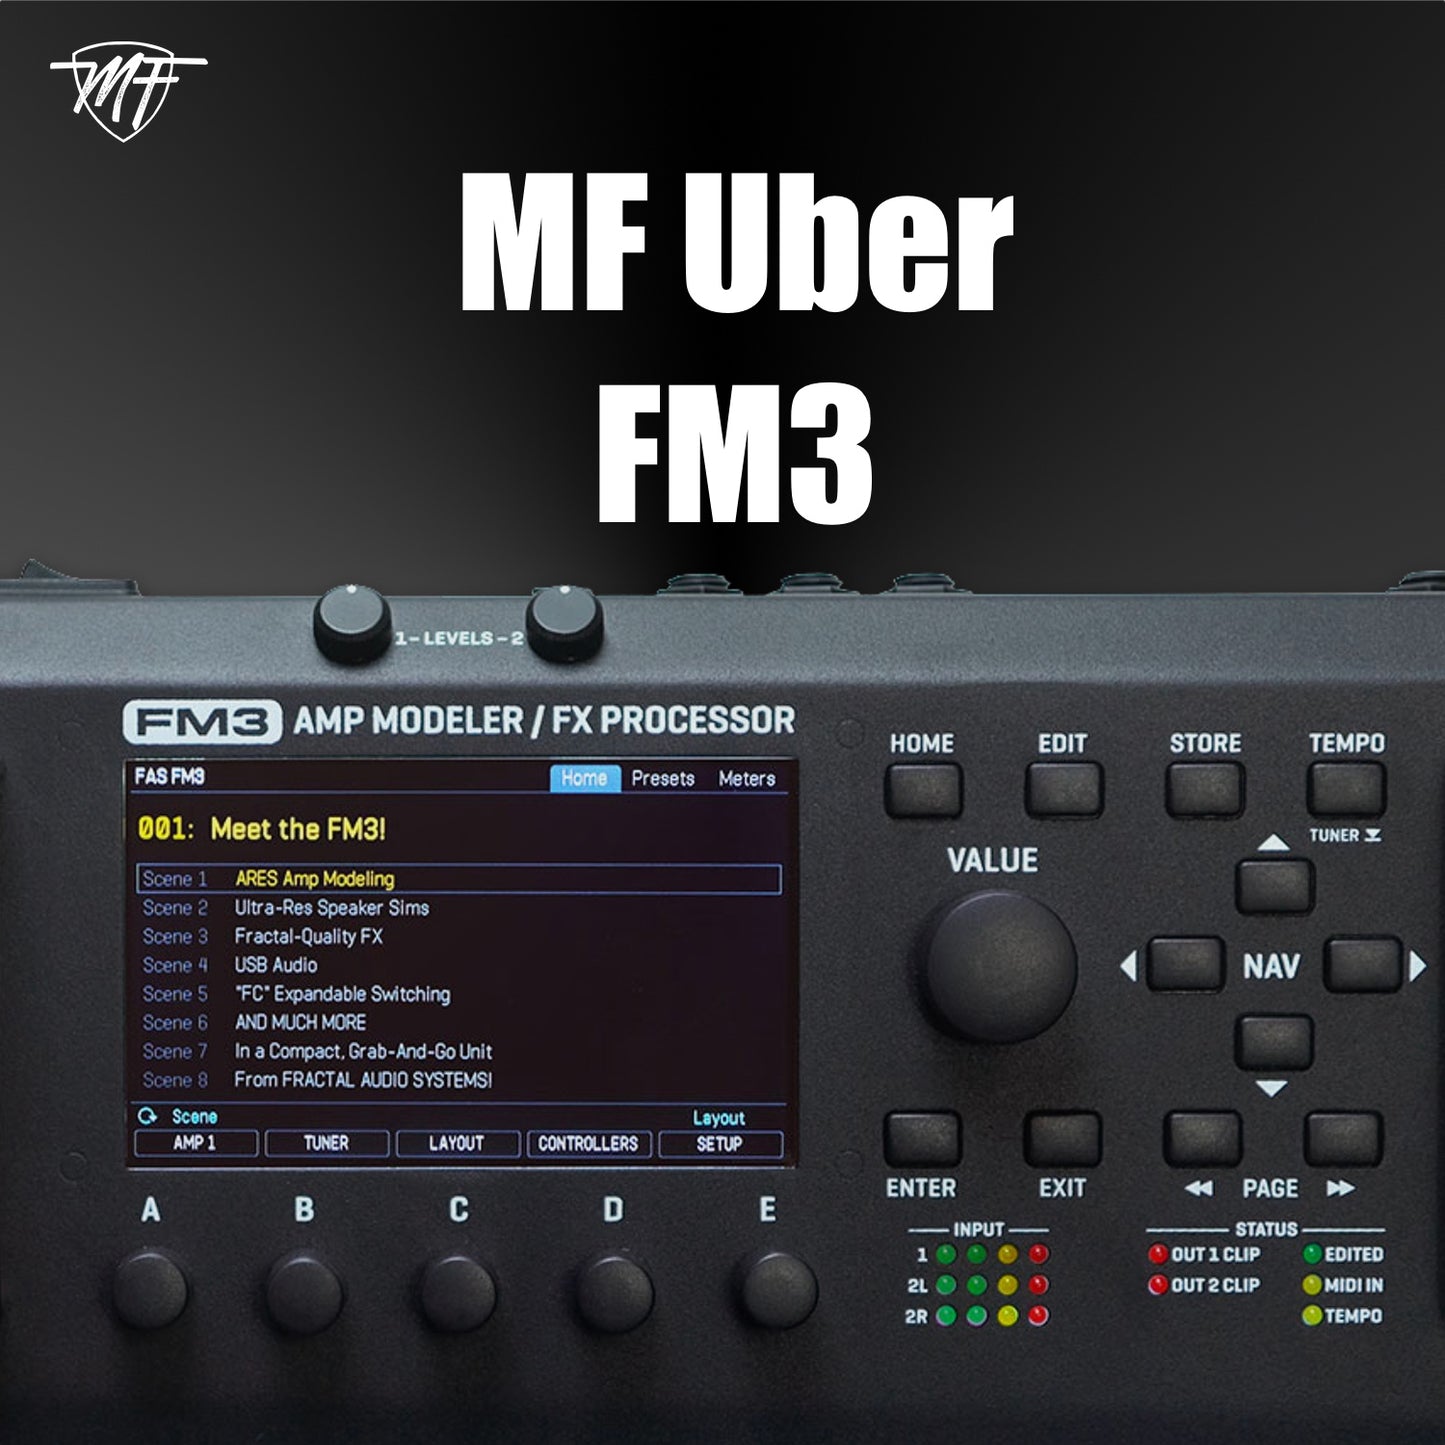 MF Uber FM3